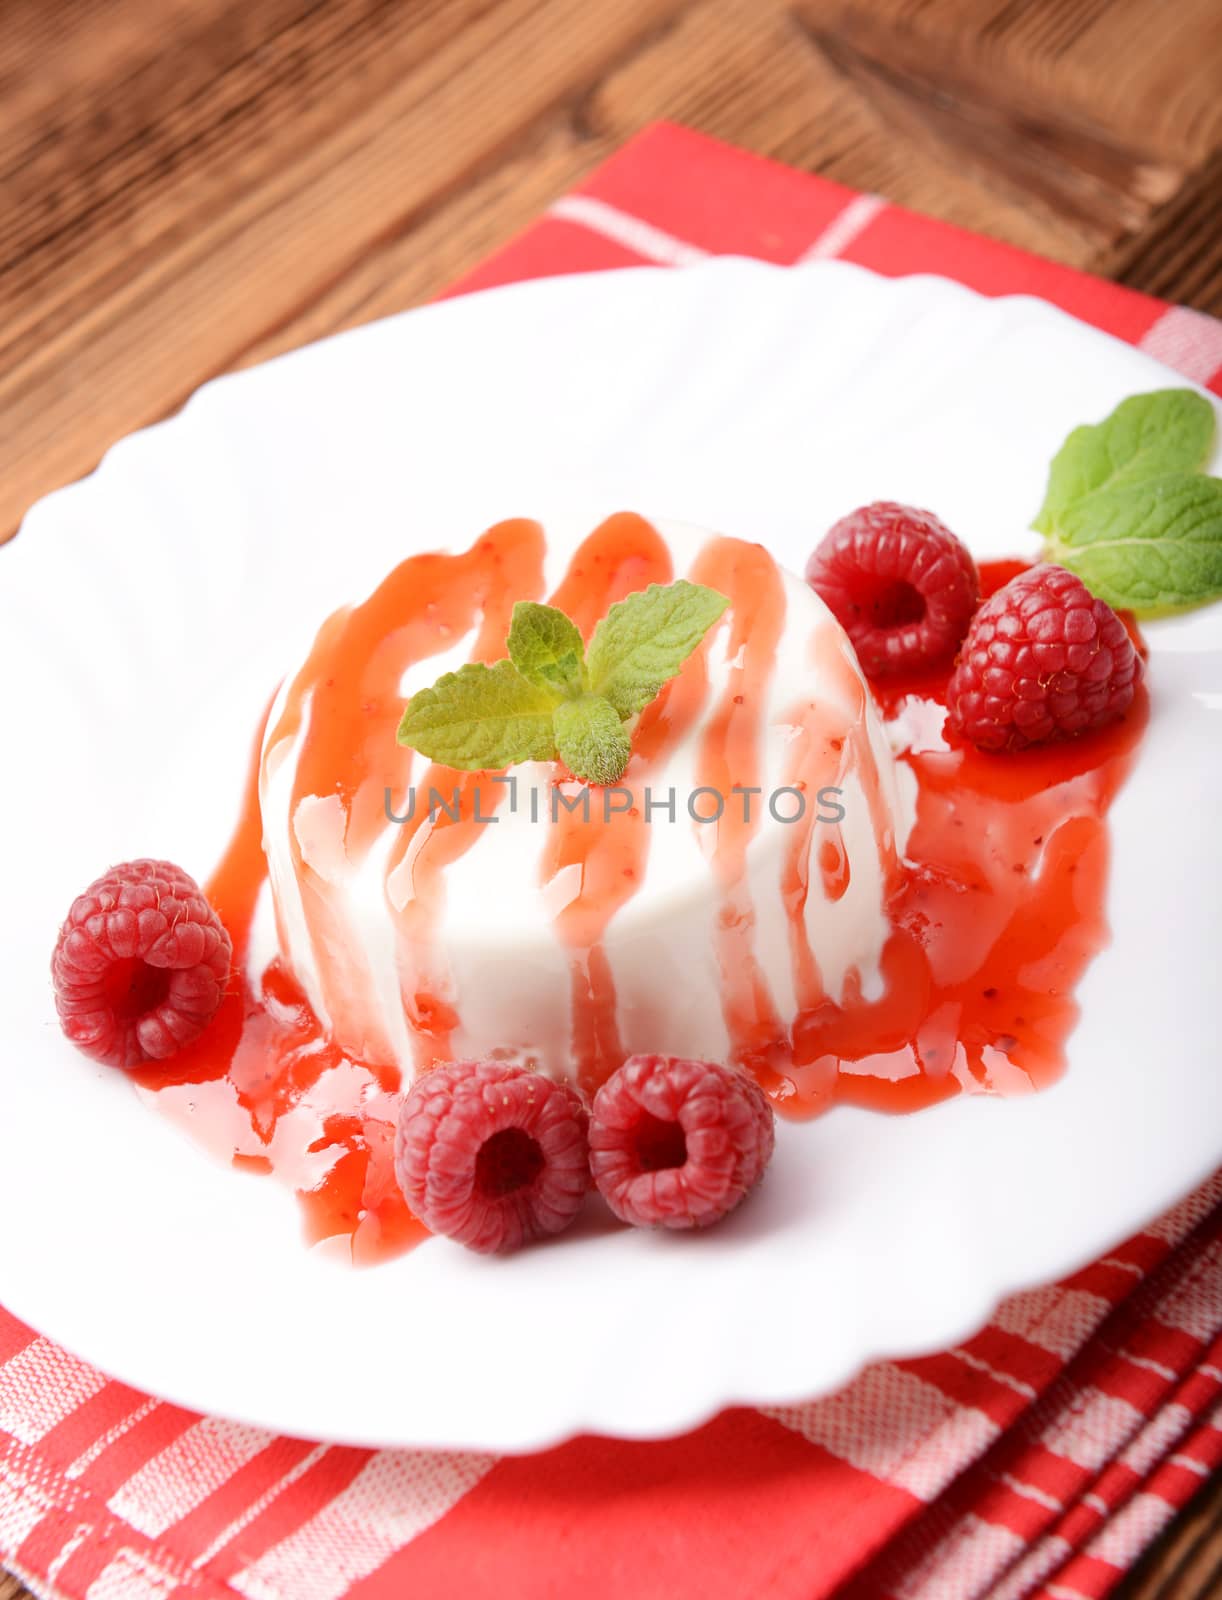 Italian dessert panna cotta with raspberries